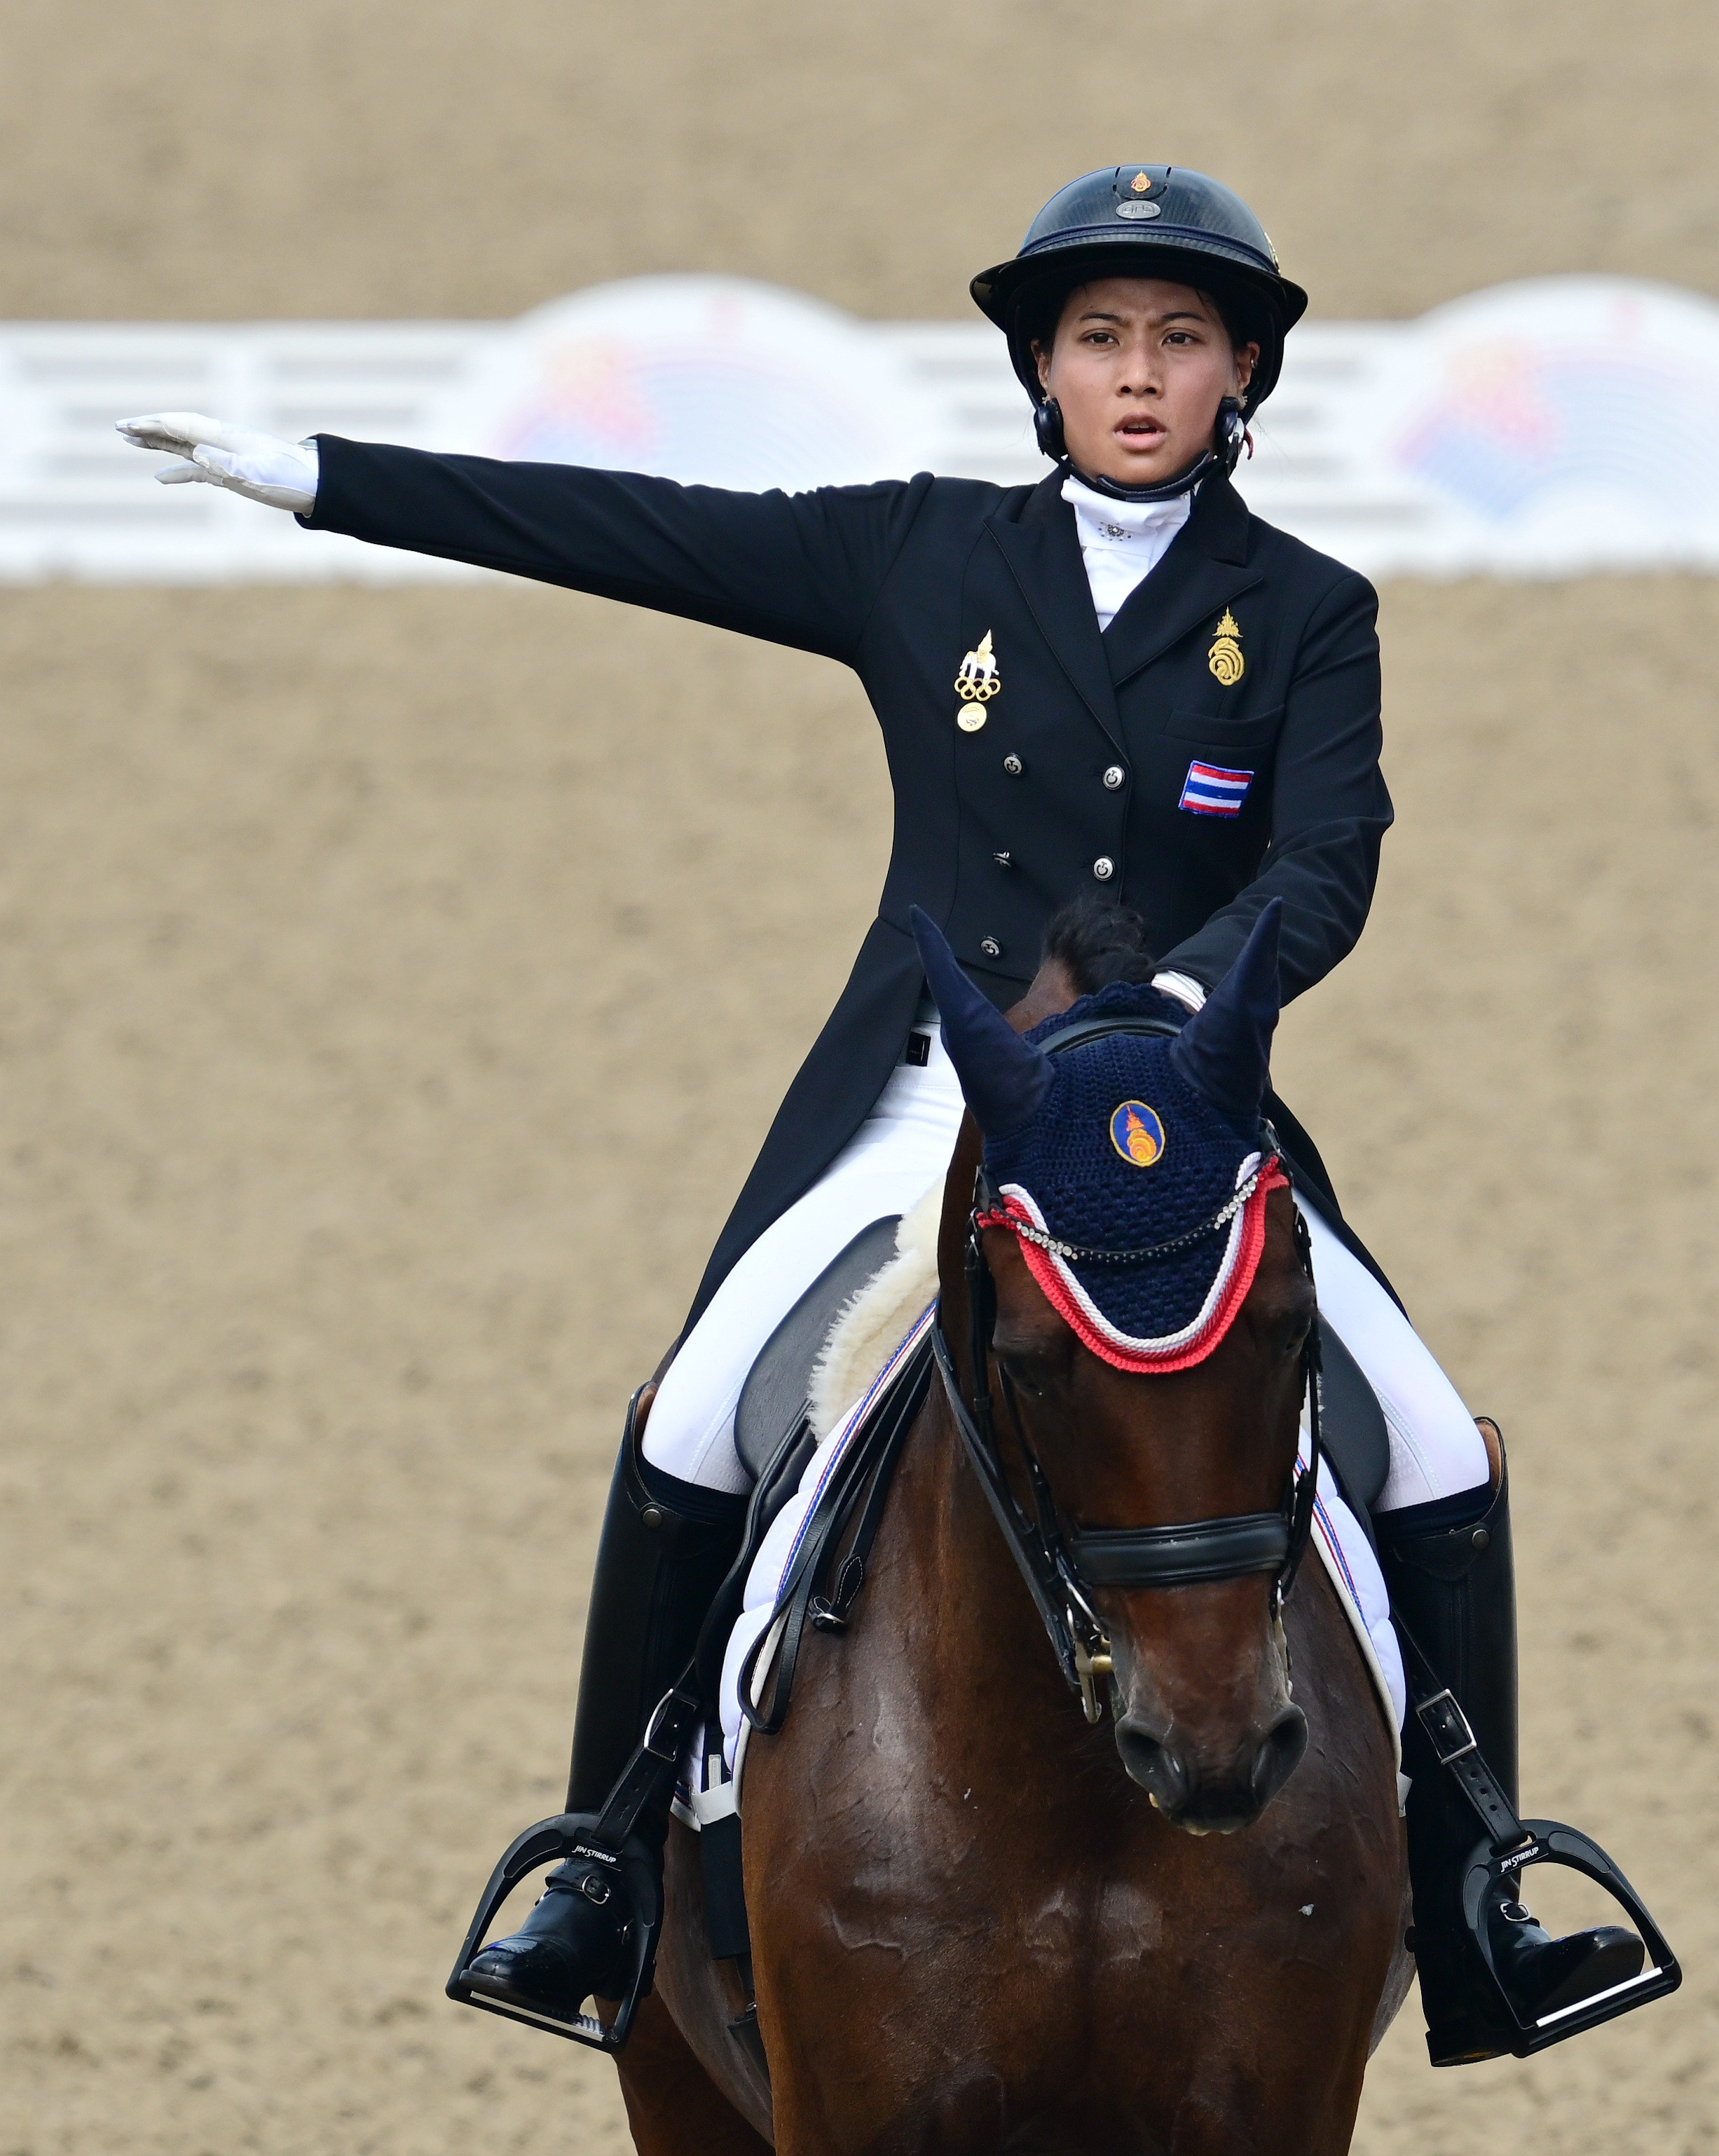 Princess Sirivannavari Mahidol of Thailand is competing at the 19th Asian Games in Hangzhou. Photo: Xinhua